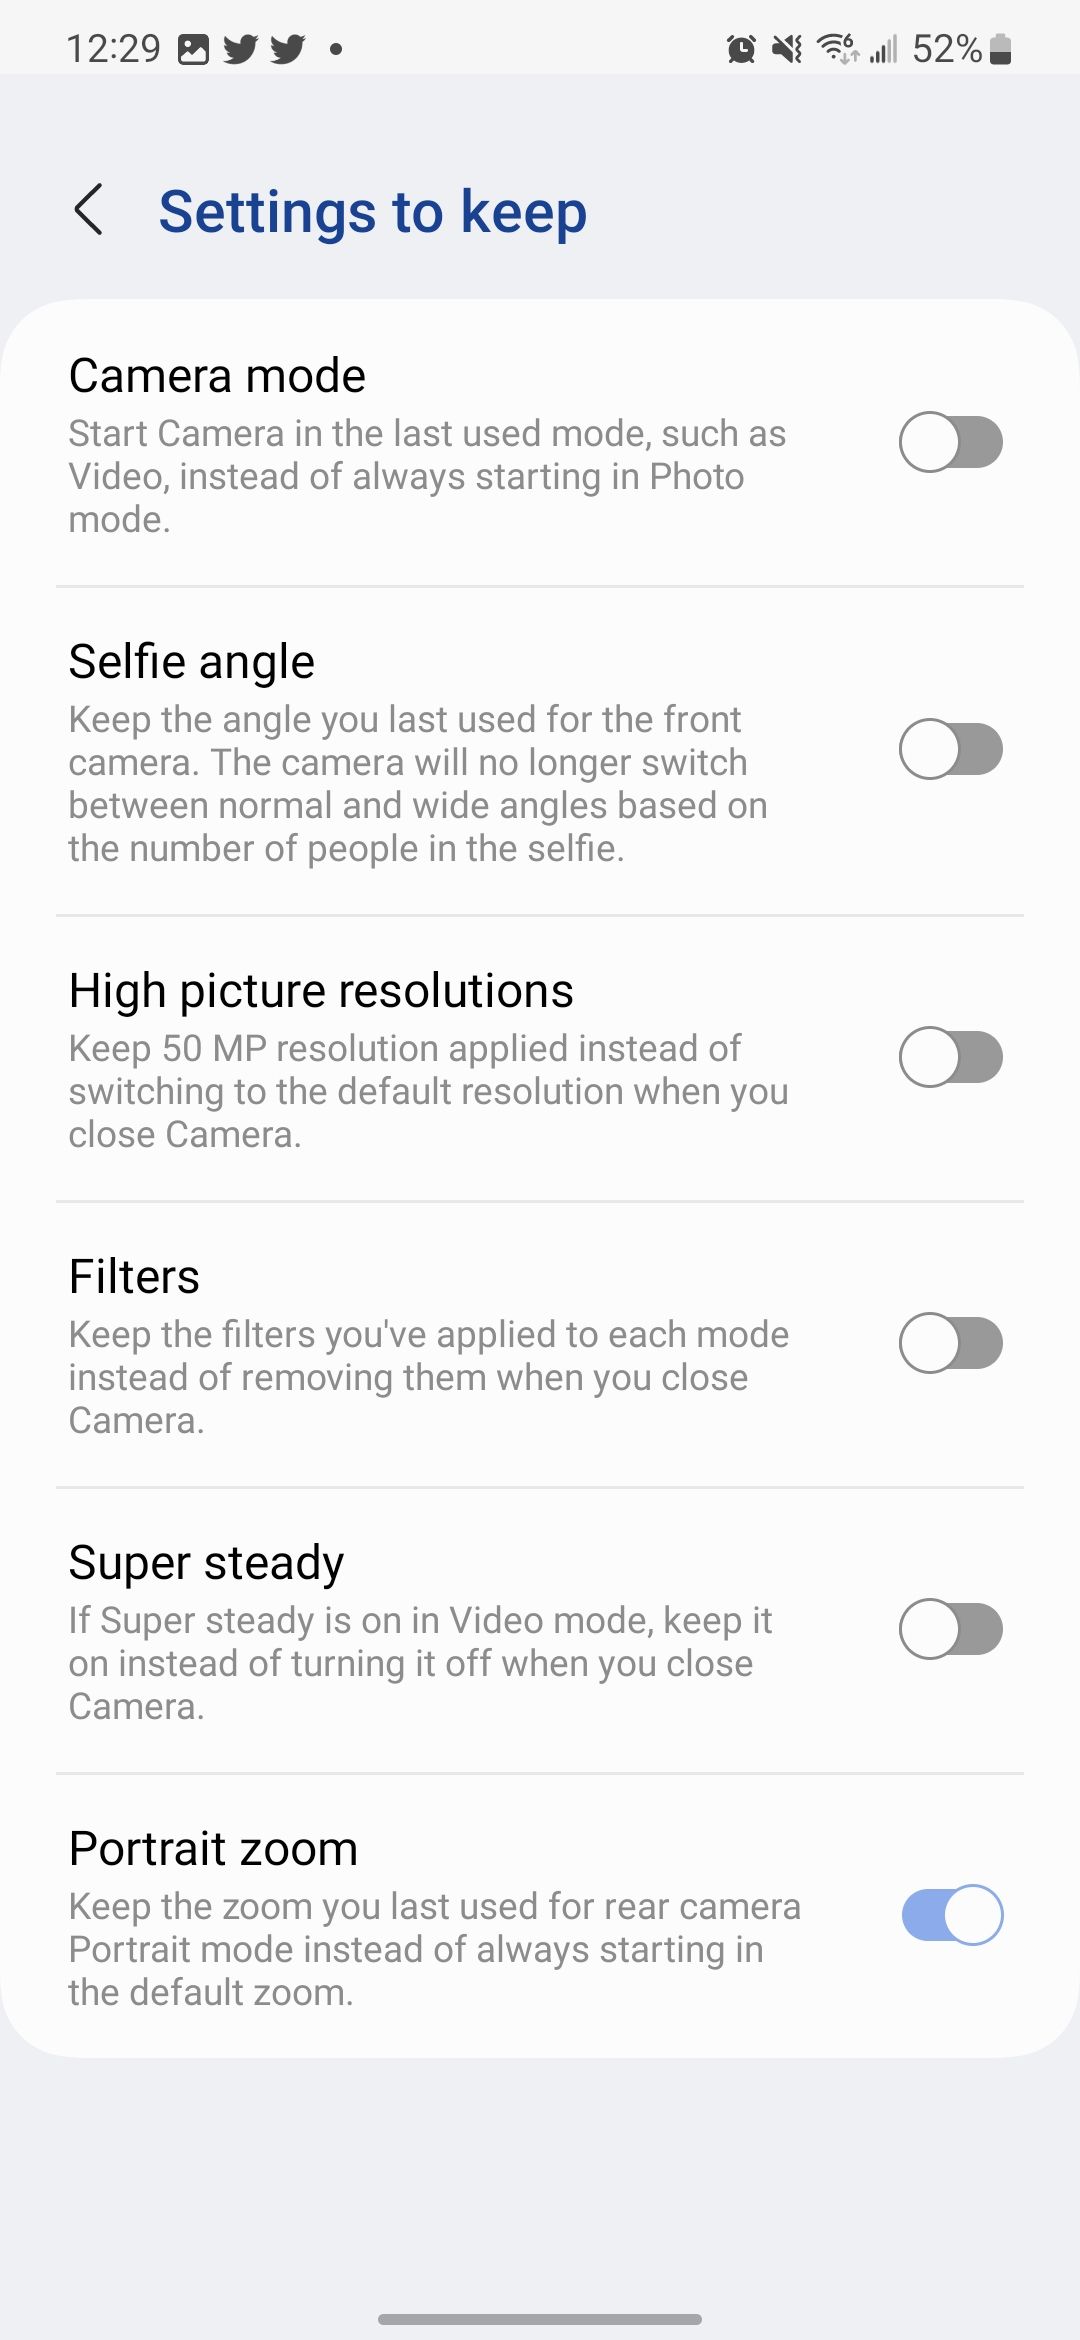 Halaman Settings to keep ditampilkan di aplikasi kamera One UI